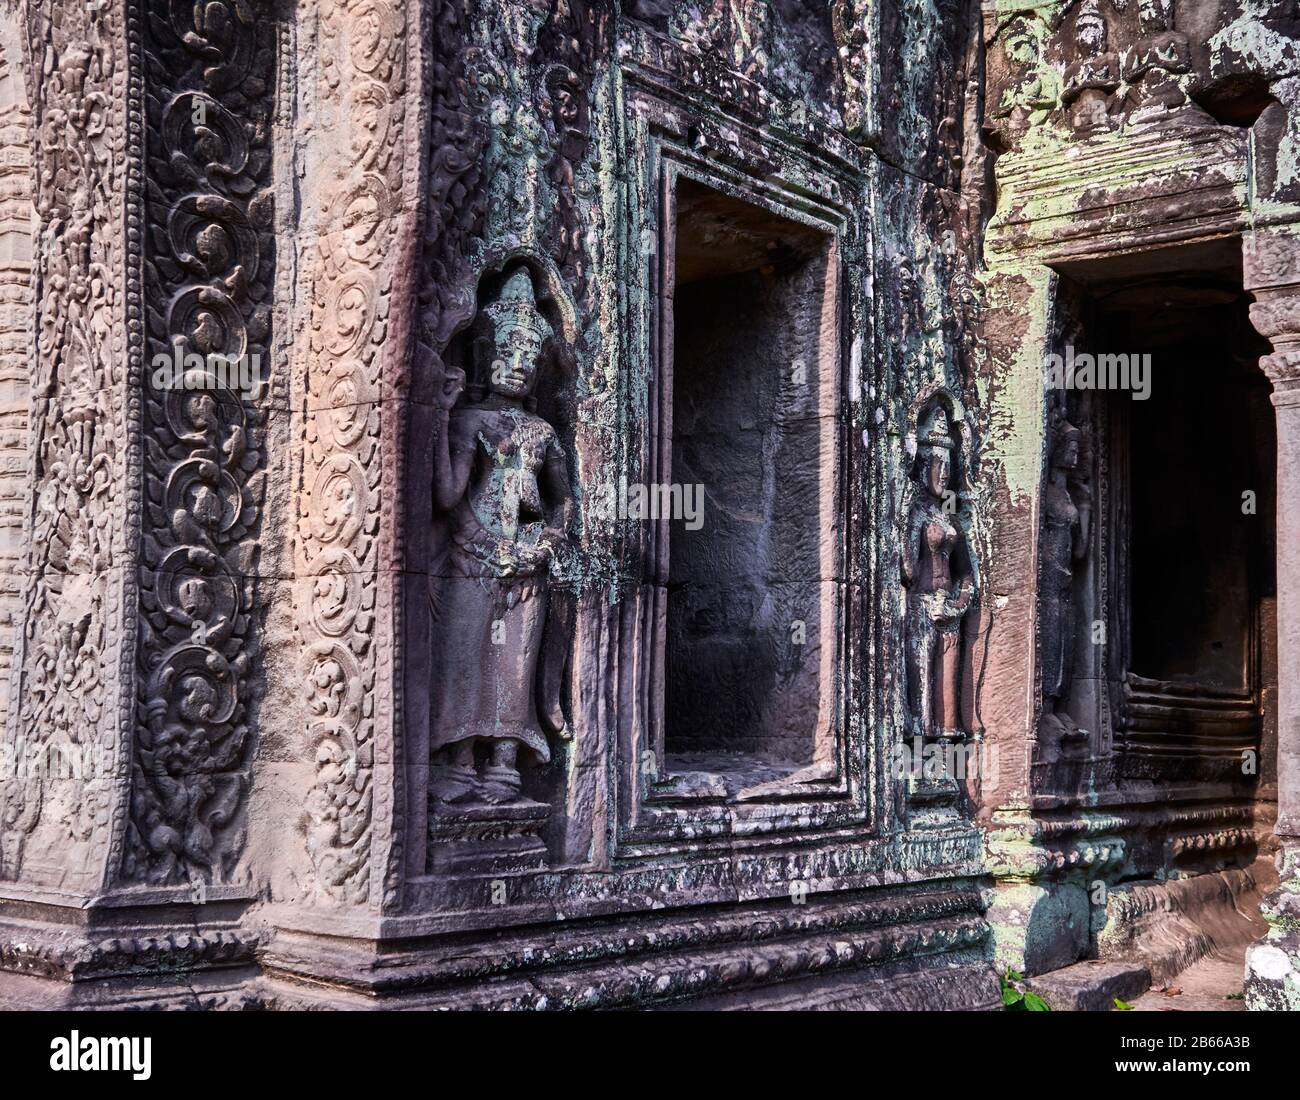 Cambodia-Angkor Ta ProhmSandstone Skulptur von Apsara Devata. Eine Apsara oder Apsarasa ist ein weiblicher Geist der Wolken und Gewässer in der hinduistischen und buddhistischen Mythologie. Deva ist der hinduistische Begriff für Gottheit, Devaten sind eine Art kleinere, stärker fokussierte Devas Stockfoto